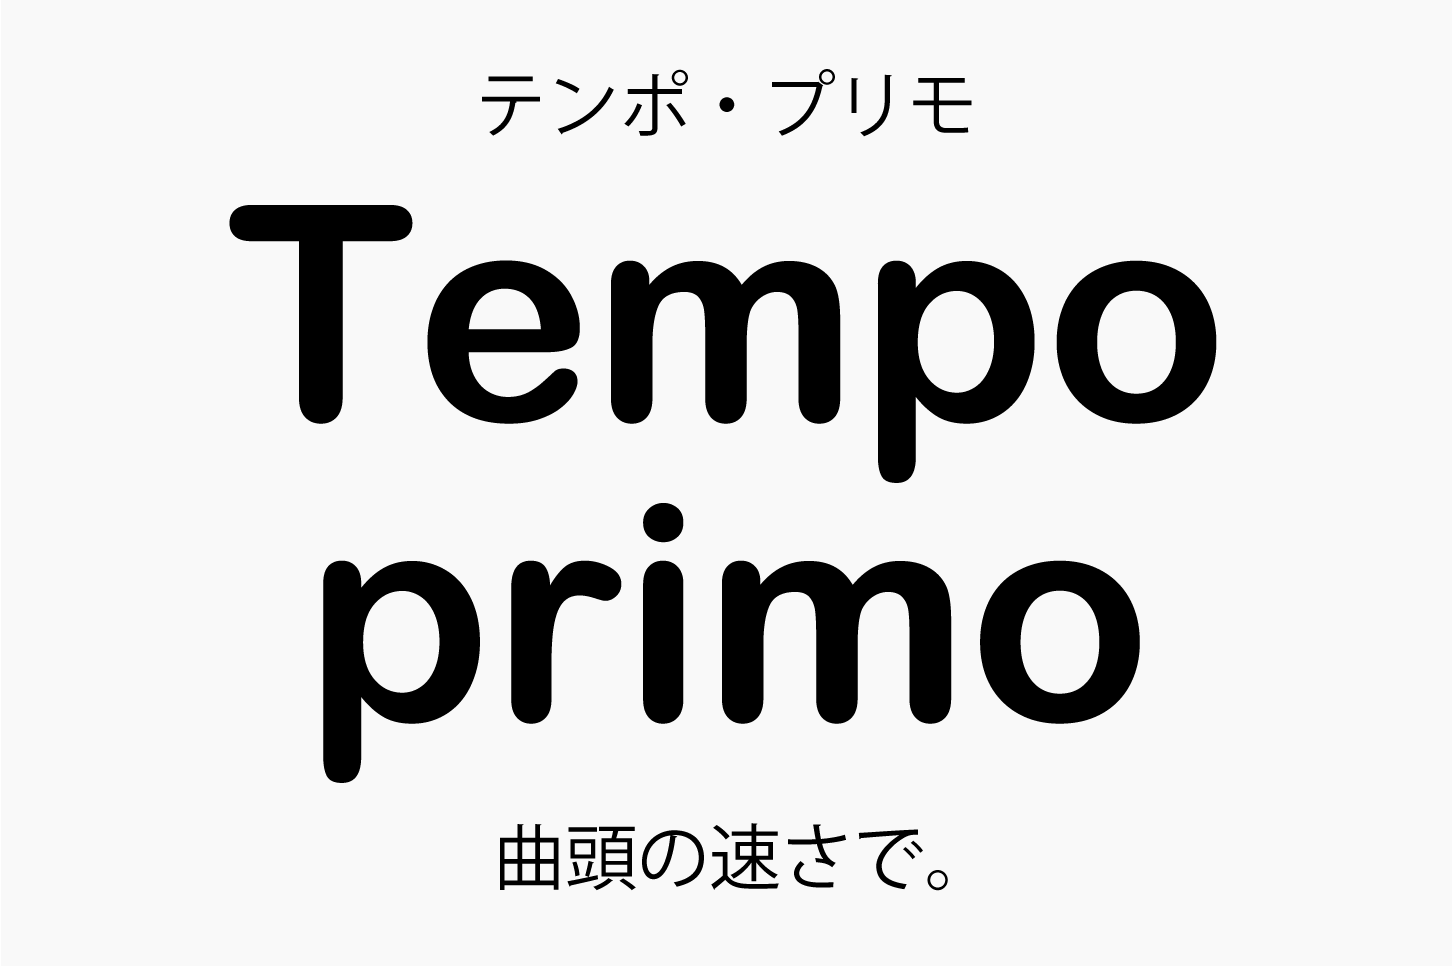 Tempo primo（テンポ・プリモ）曲頭の速さで。